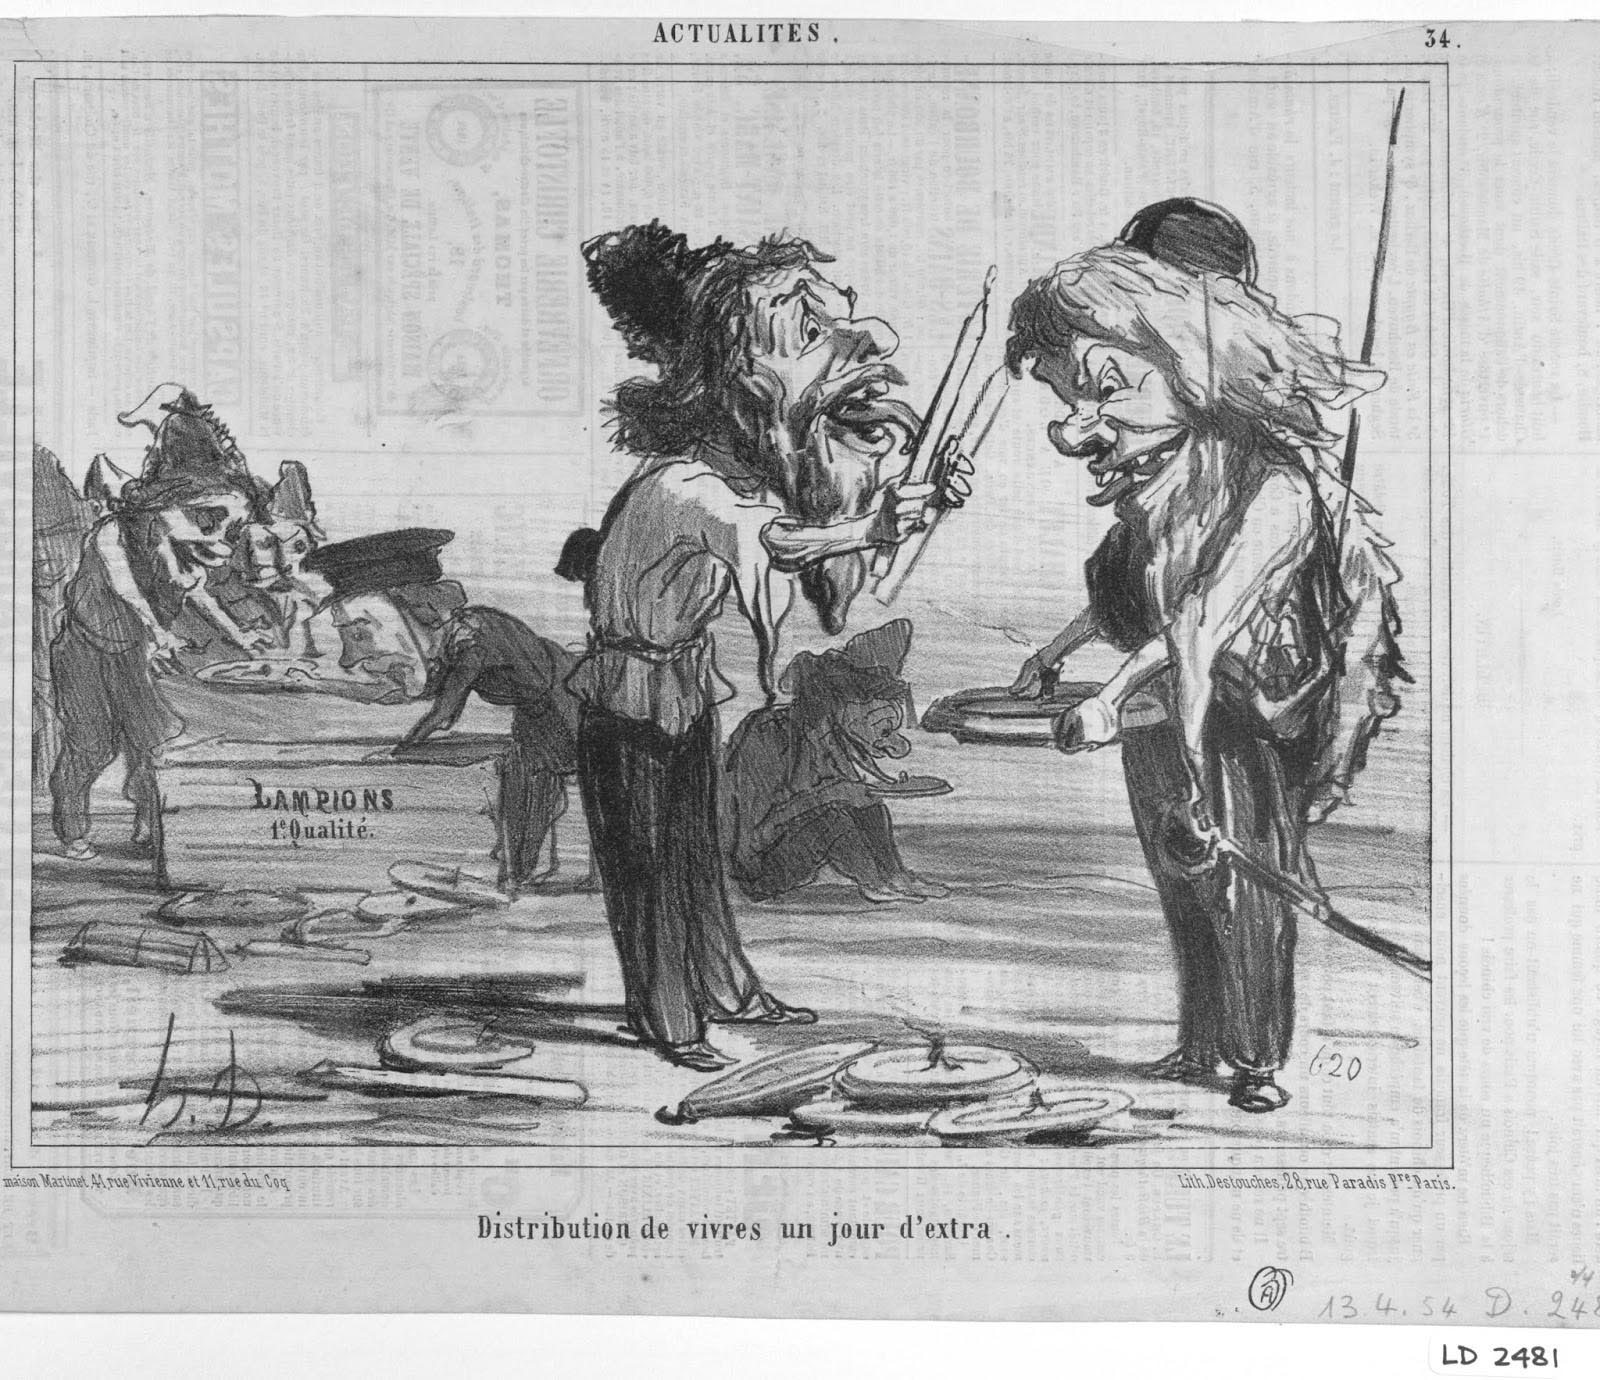 Honoré Daumier. Actualités, no. 34; Les Cosaques pour rire (Laughing at the Cossacks), no. 20. Le Charivari. April 13, 1854. LD 2481